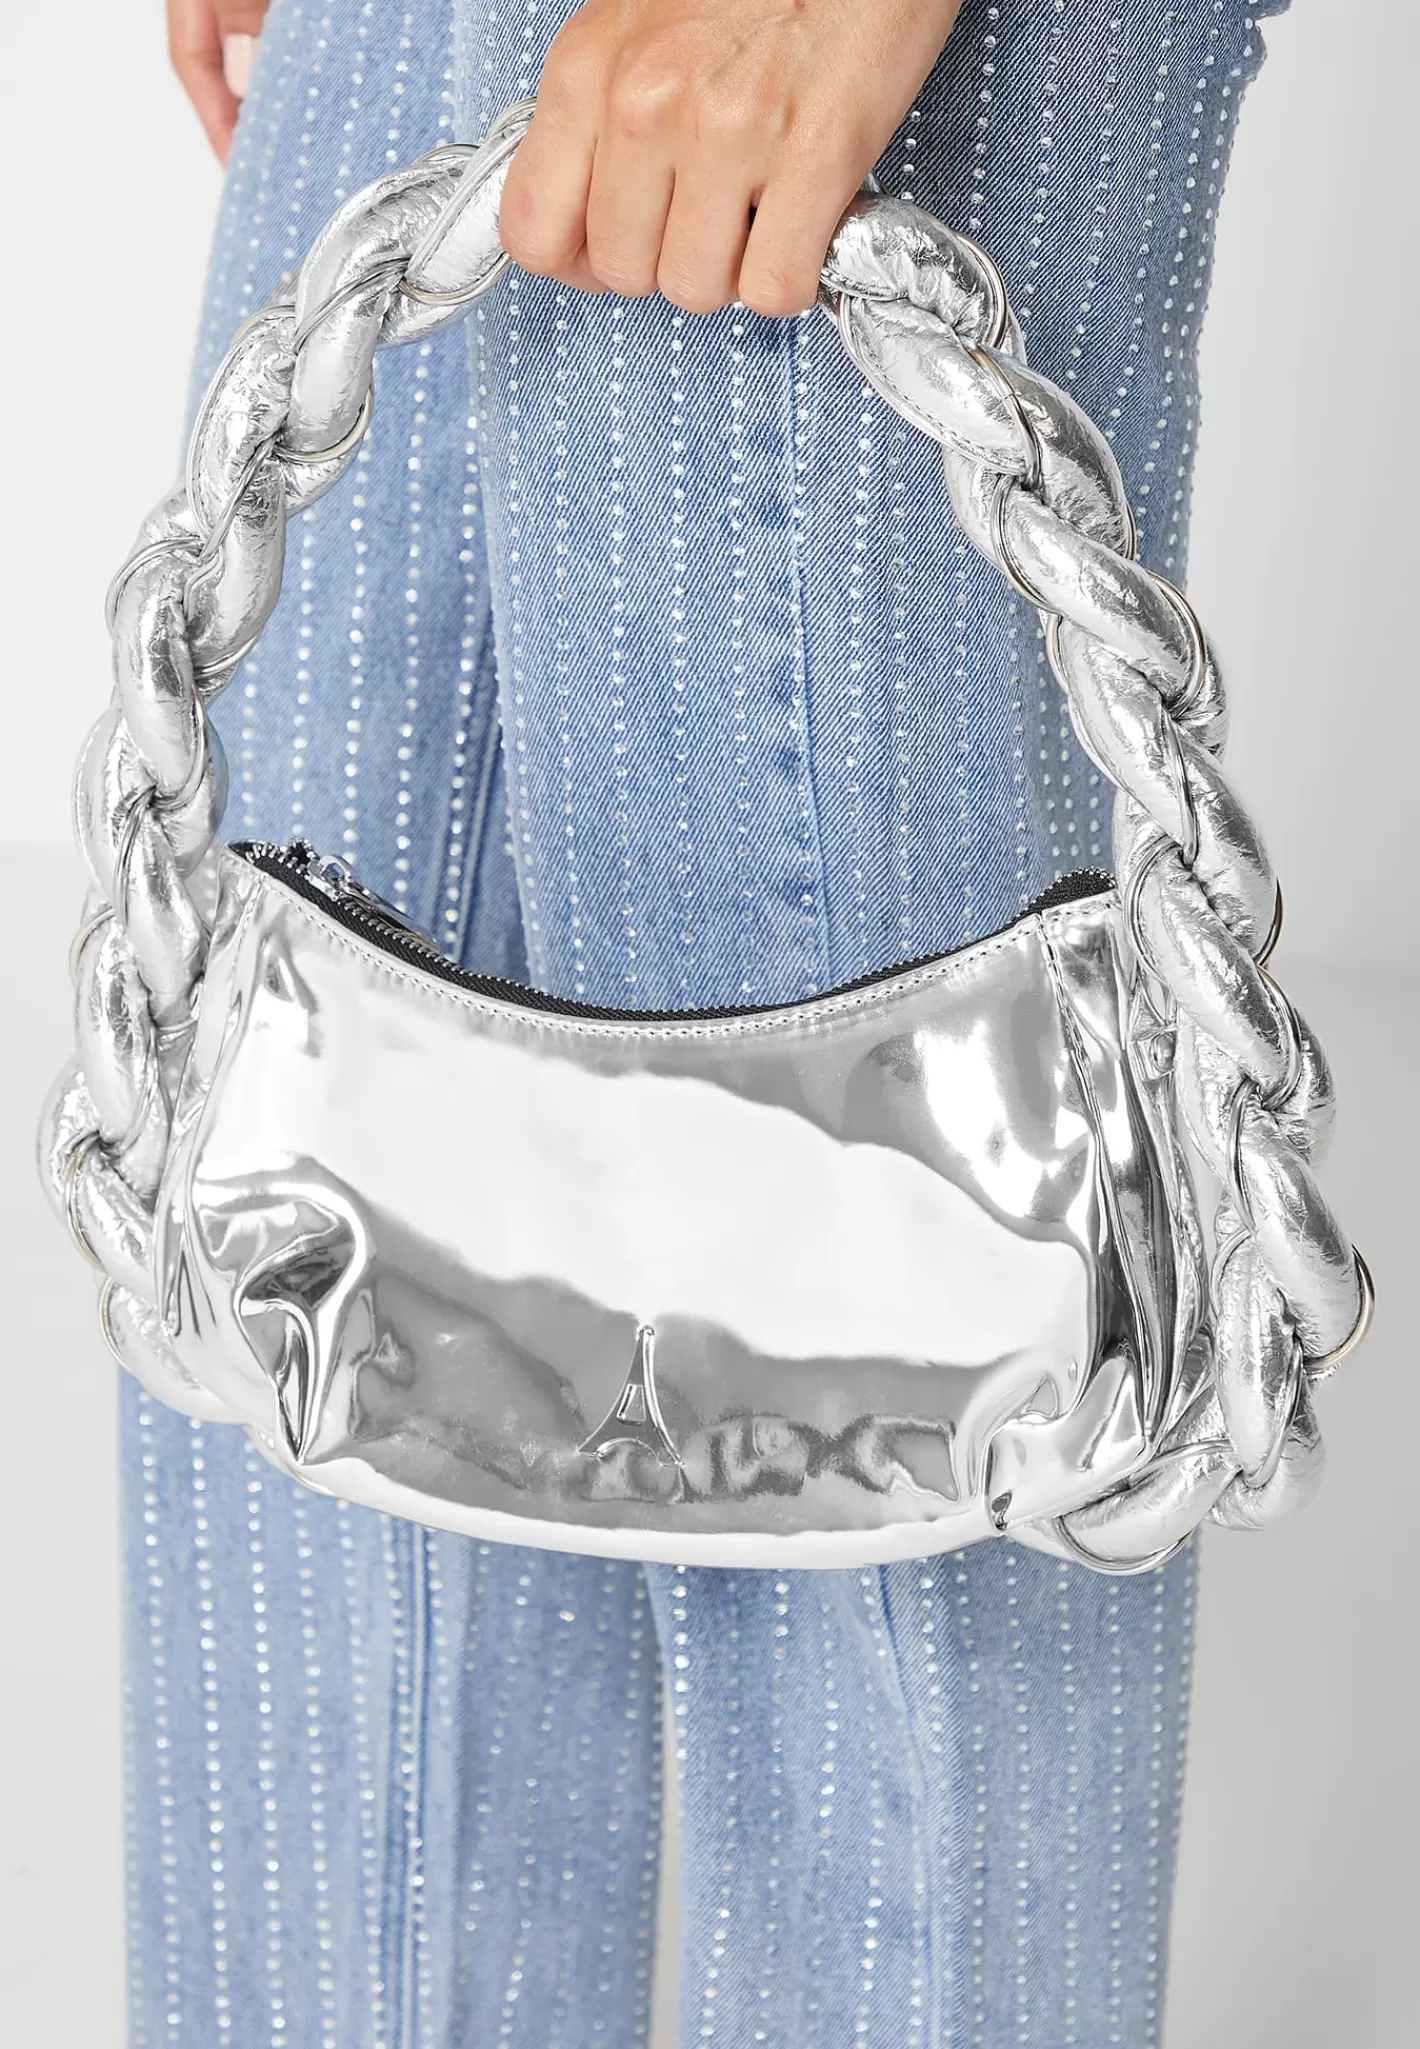 Chain Plaited Rope Handbag - Chrome-Manière De Voir Online